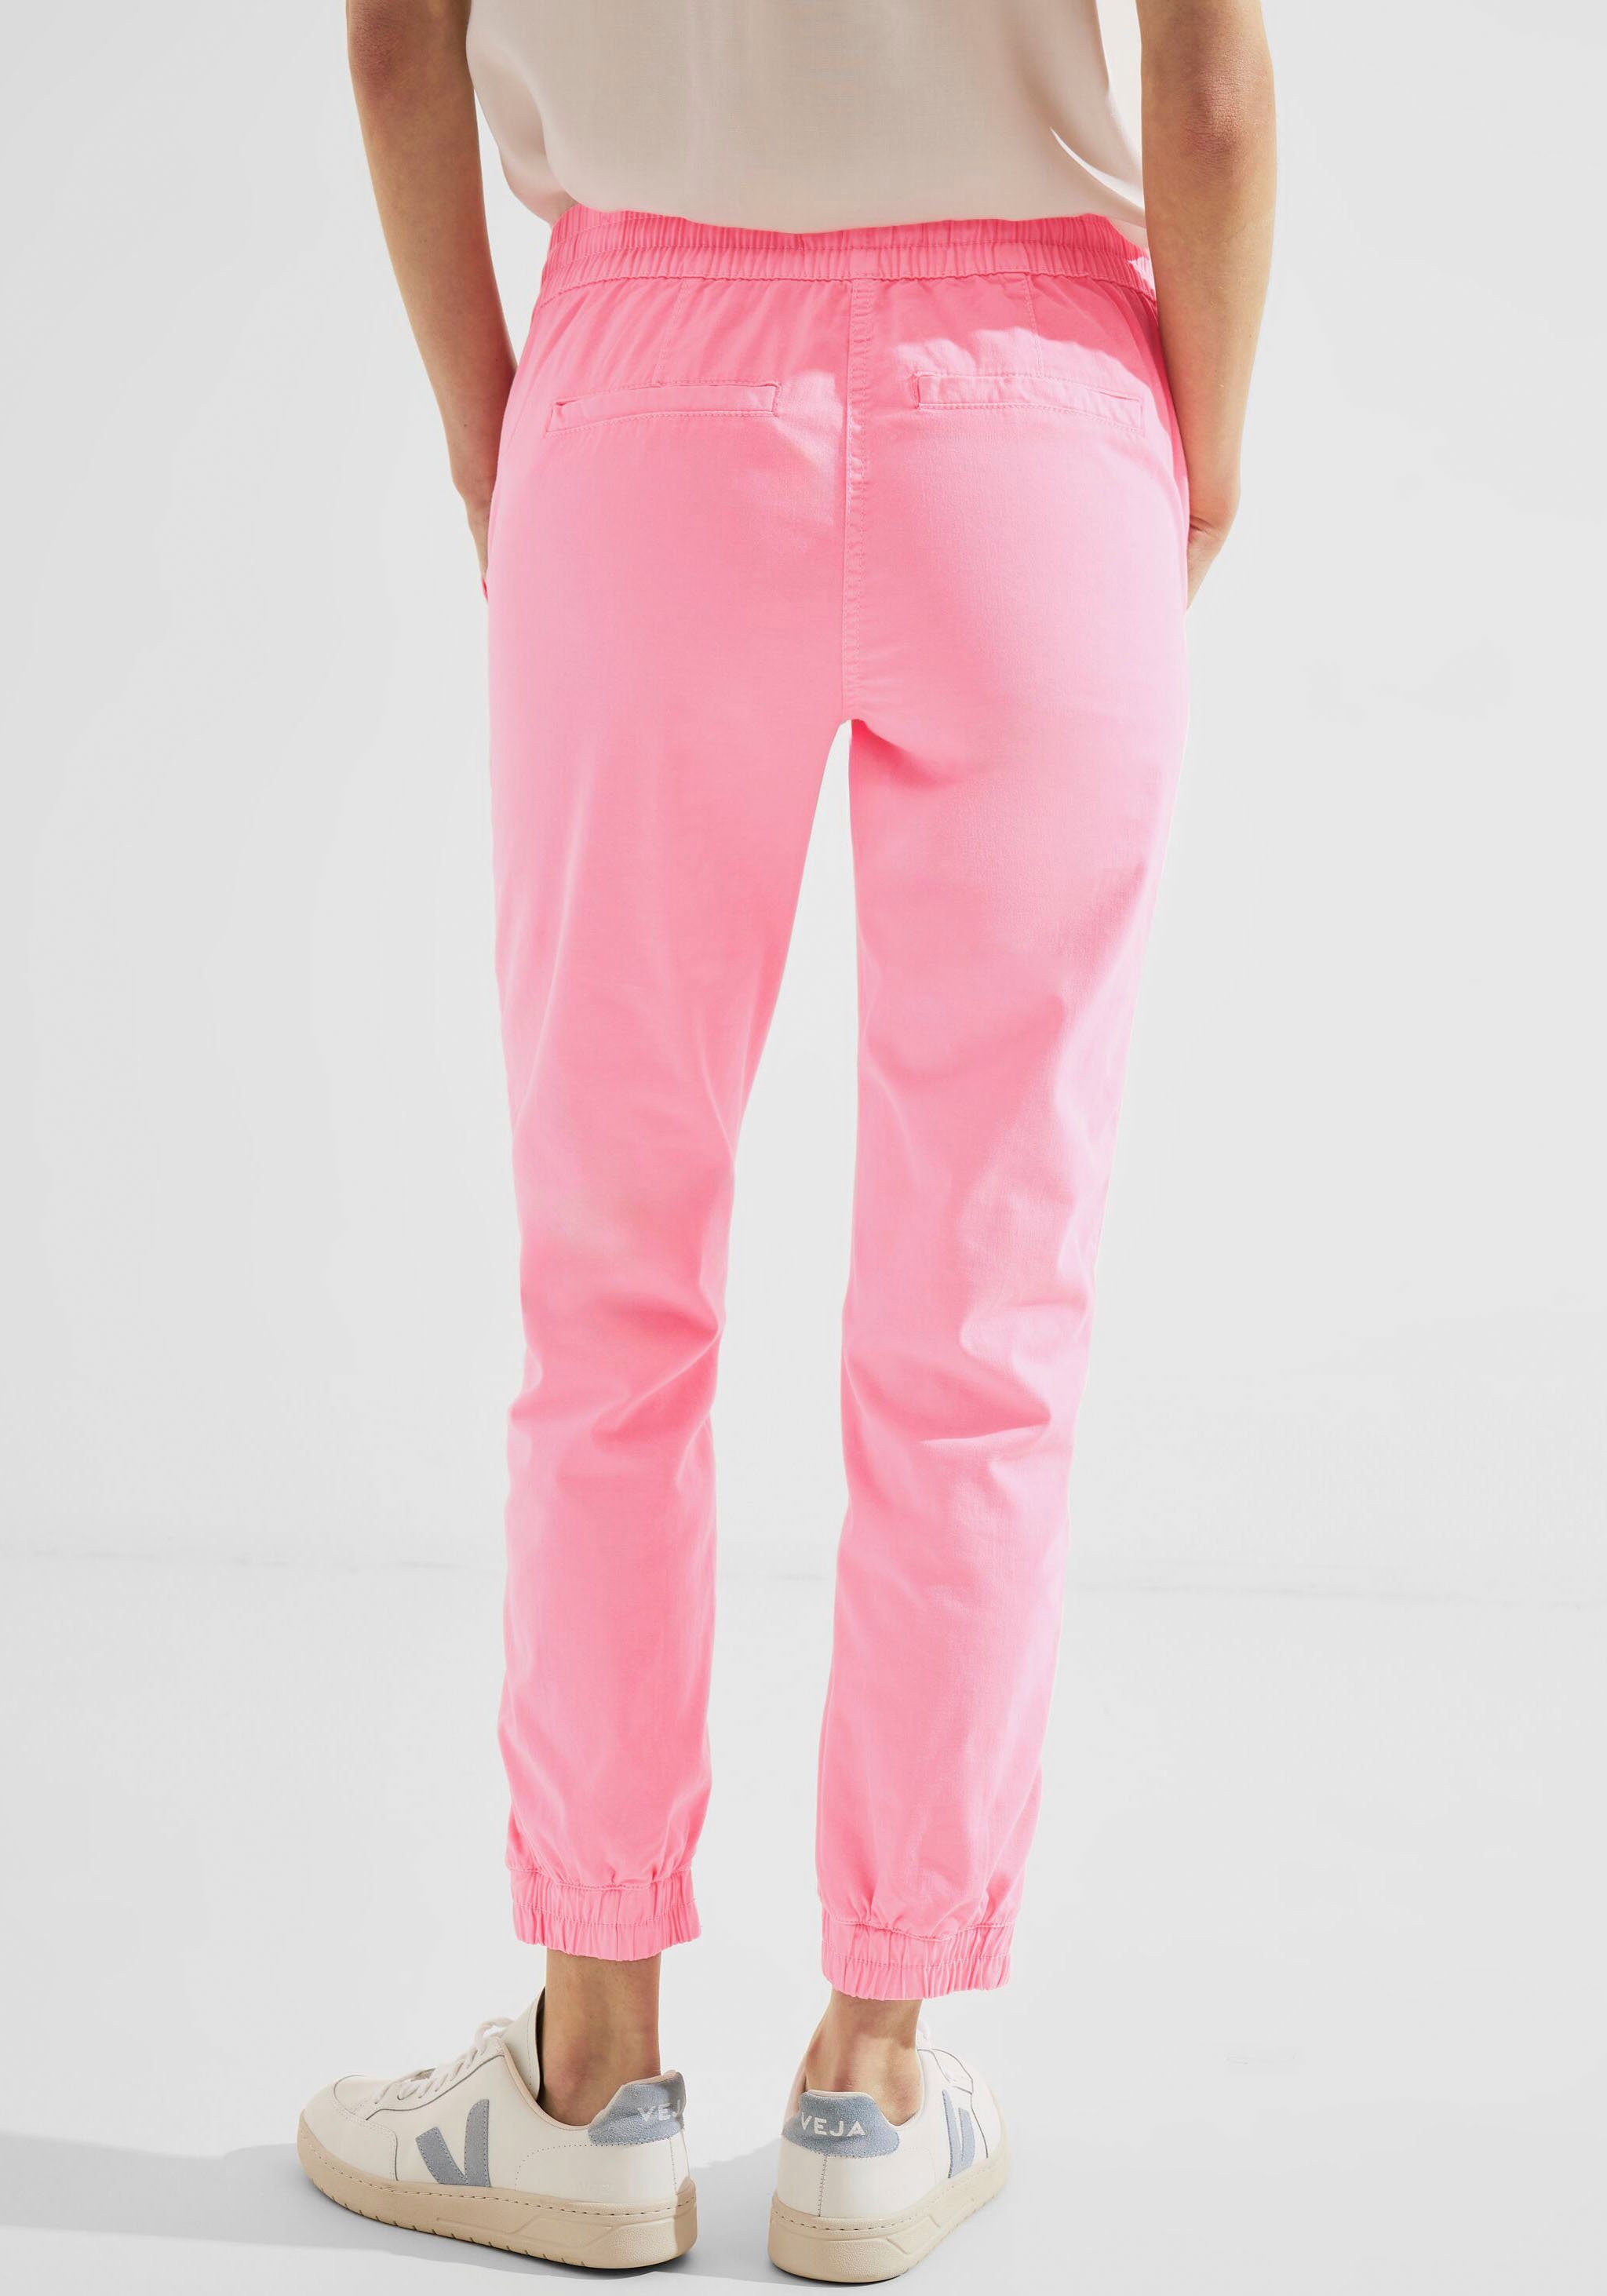 Cecil Outdoorhose mit elastischem Saum Beinabschluss pink soft am neon